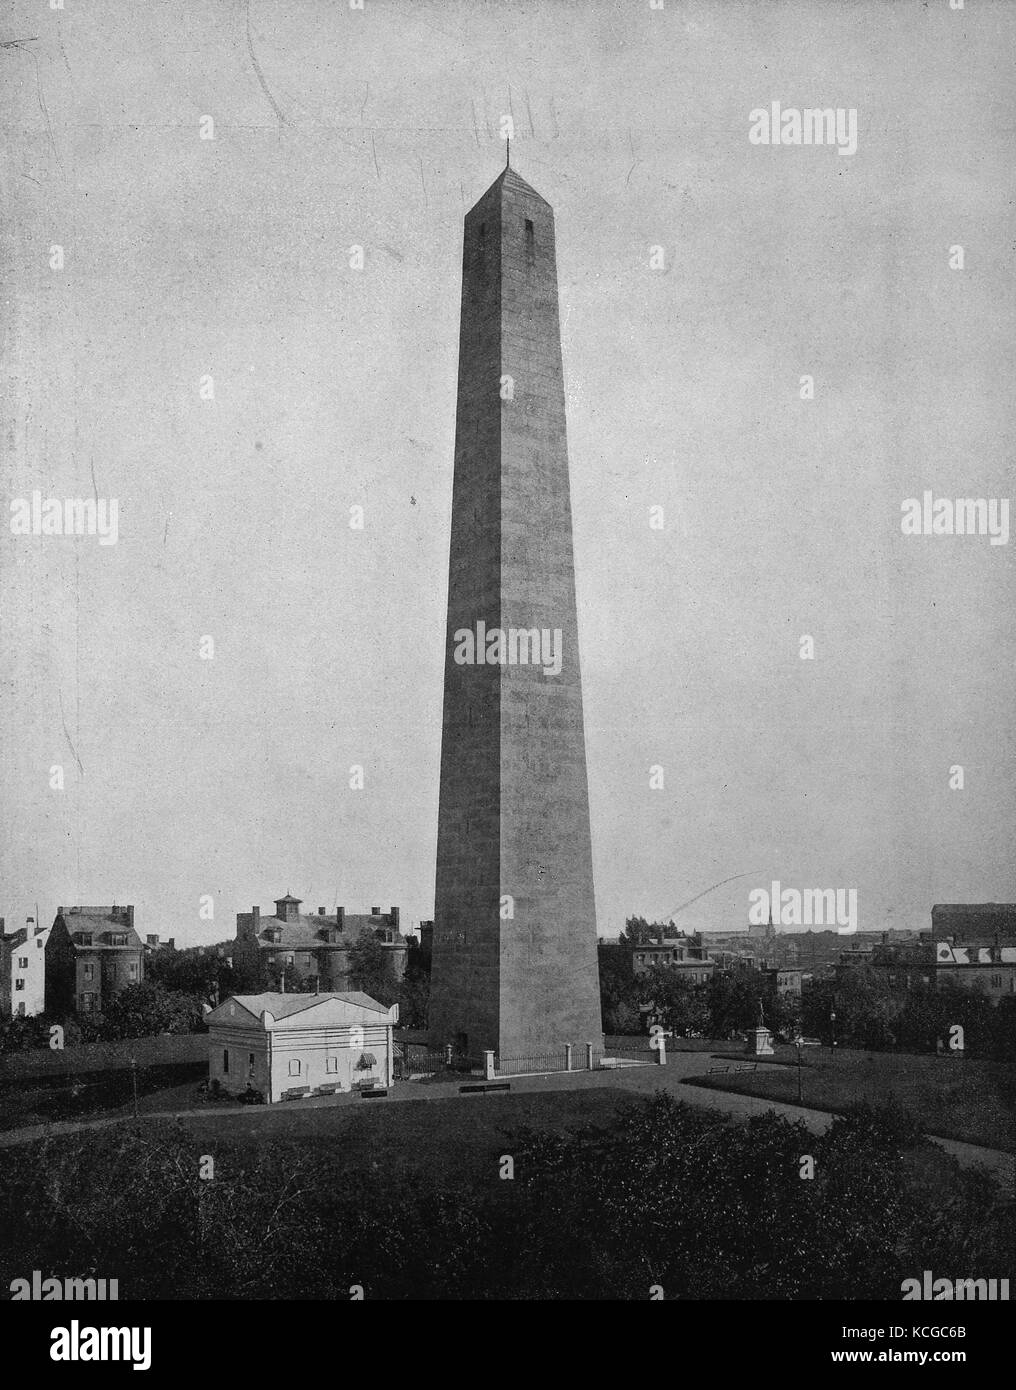 Vereinigten Staaten von Amerika, der 67 Meter hohe Obelisk aus Granit, der Bunker Hill Monument in Charlestown in der Nähe von der Stadt Boston, Massachusetts, digital verbesserte Reproduktion einer historischen Foto aus dem (geschätzten) Jahr 1899 Stockfoto